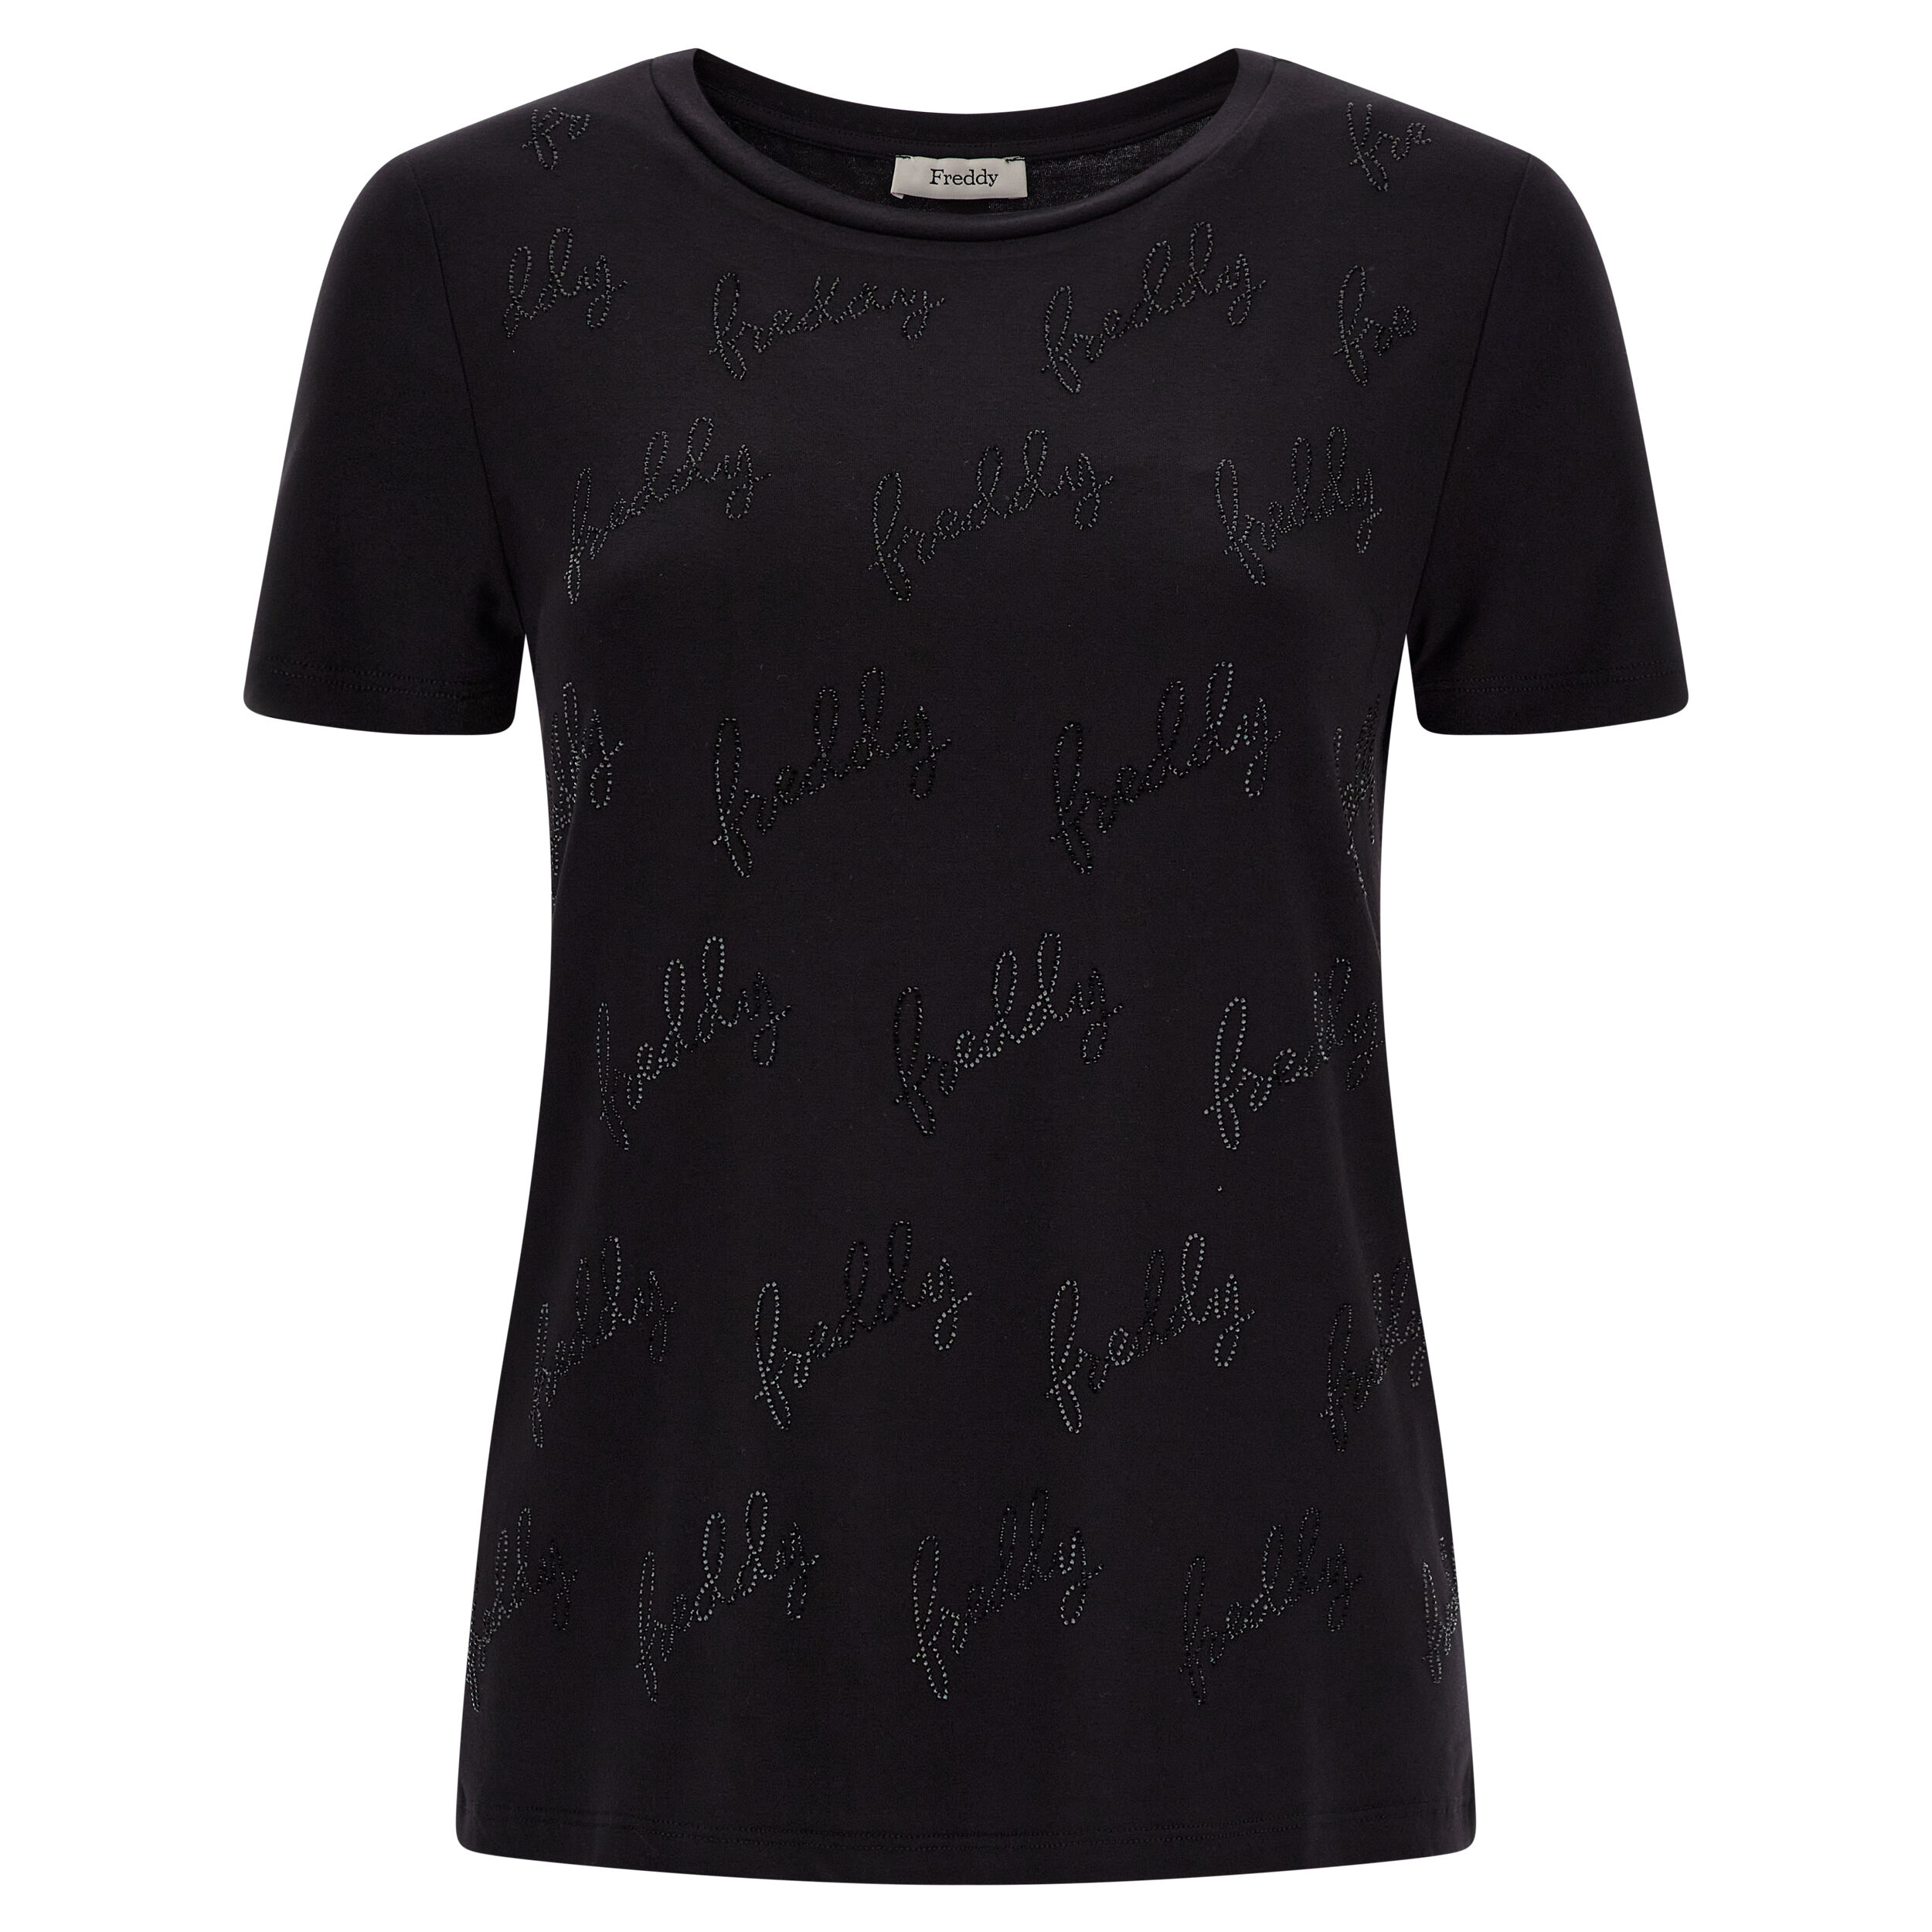 Freddy T-shirt con logo all-over in strass sul fronte Black- Gray Black Donna Small